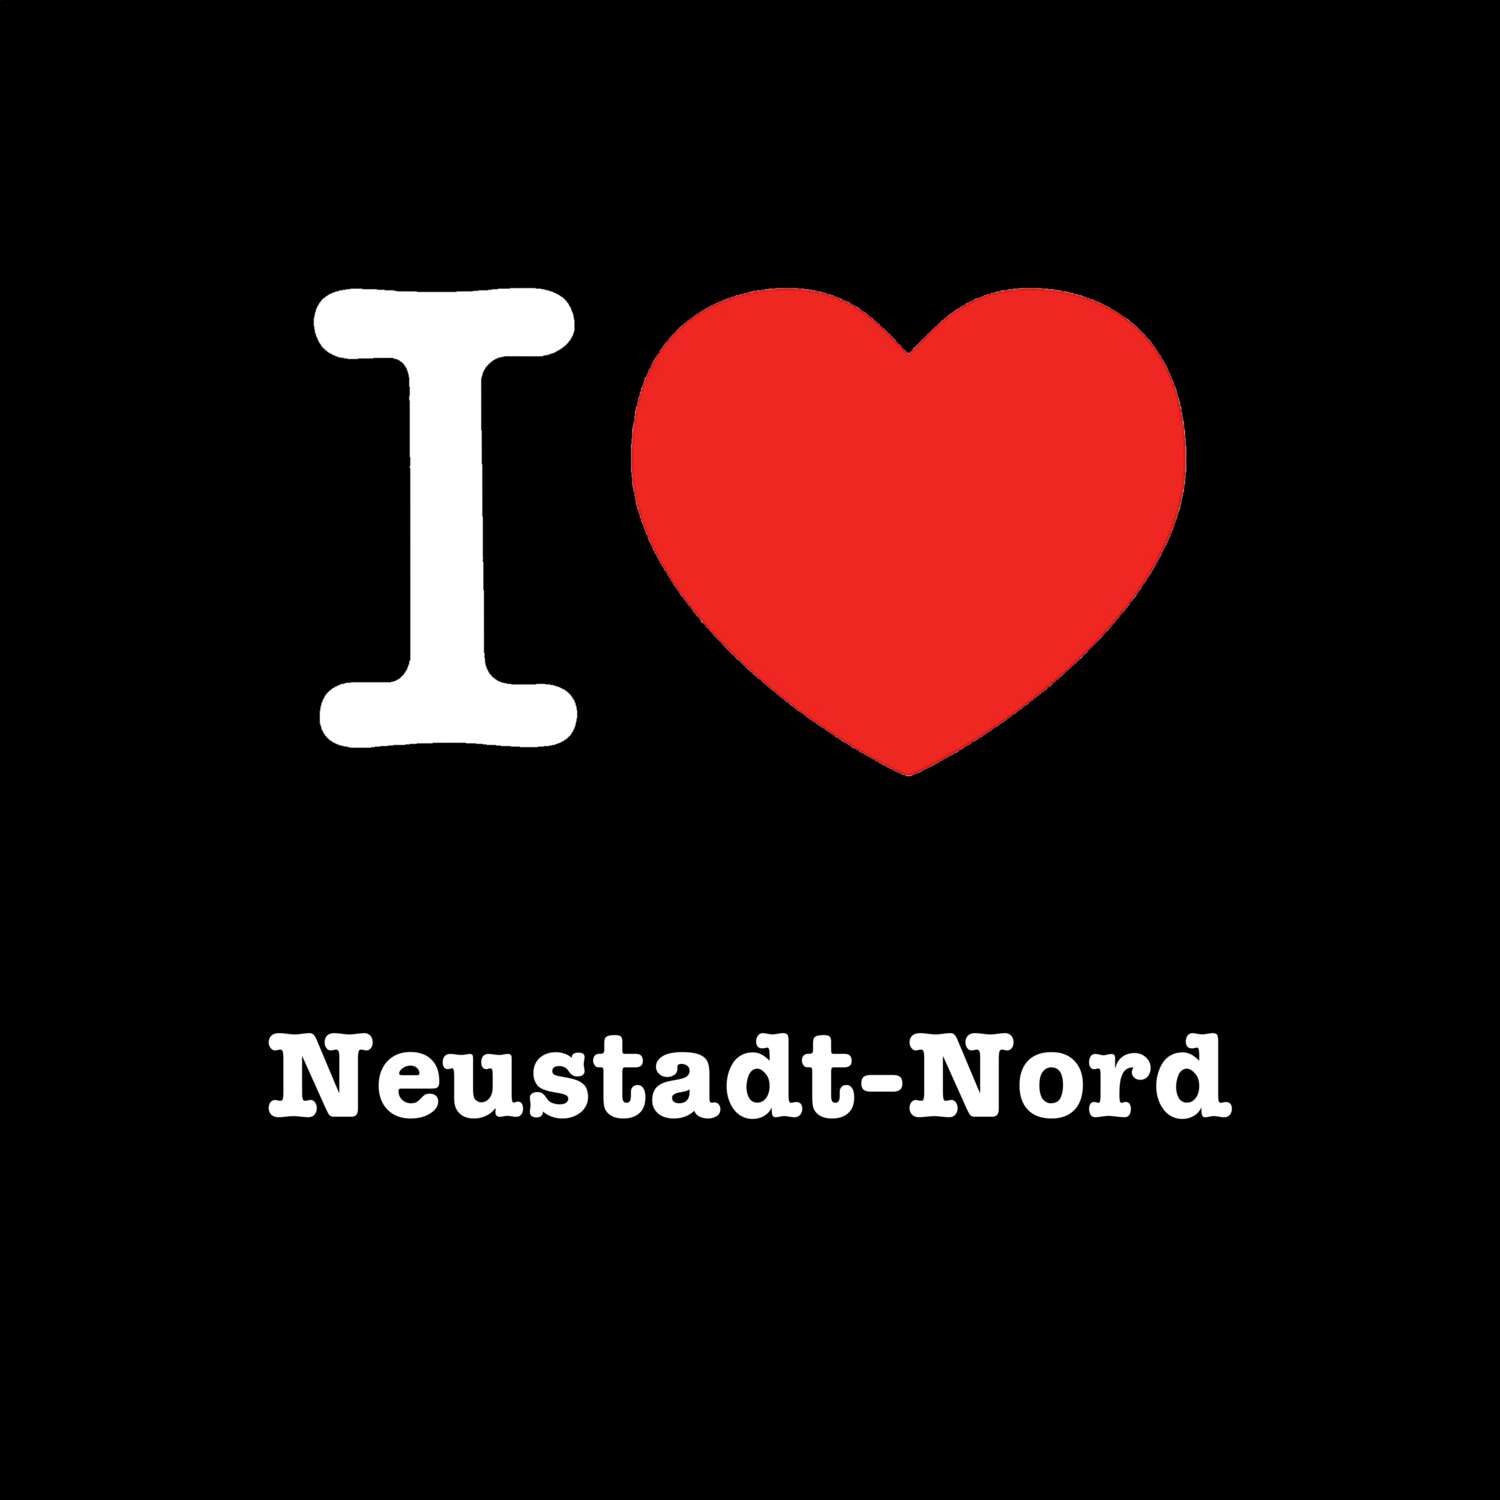 Neustadt-Nord T-Shirt »I love«